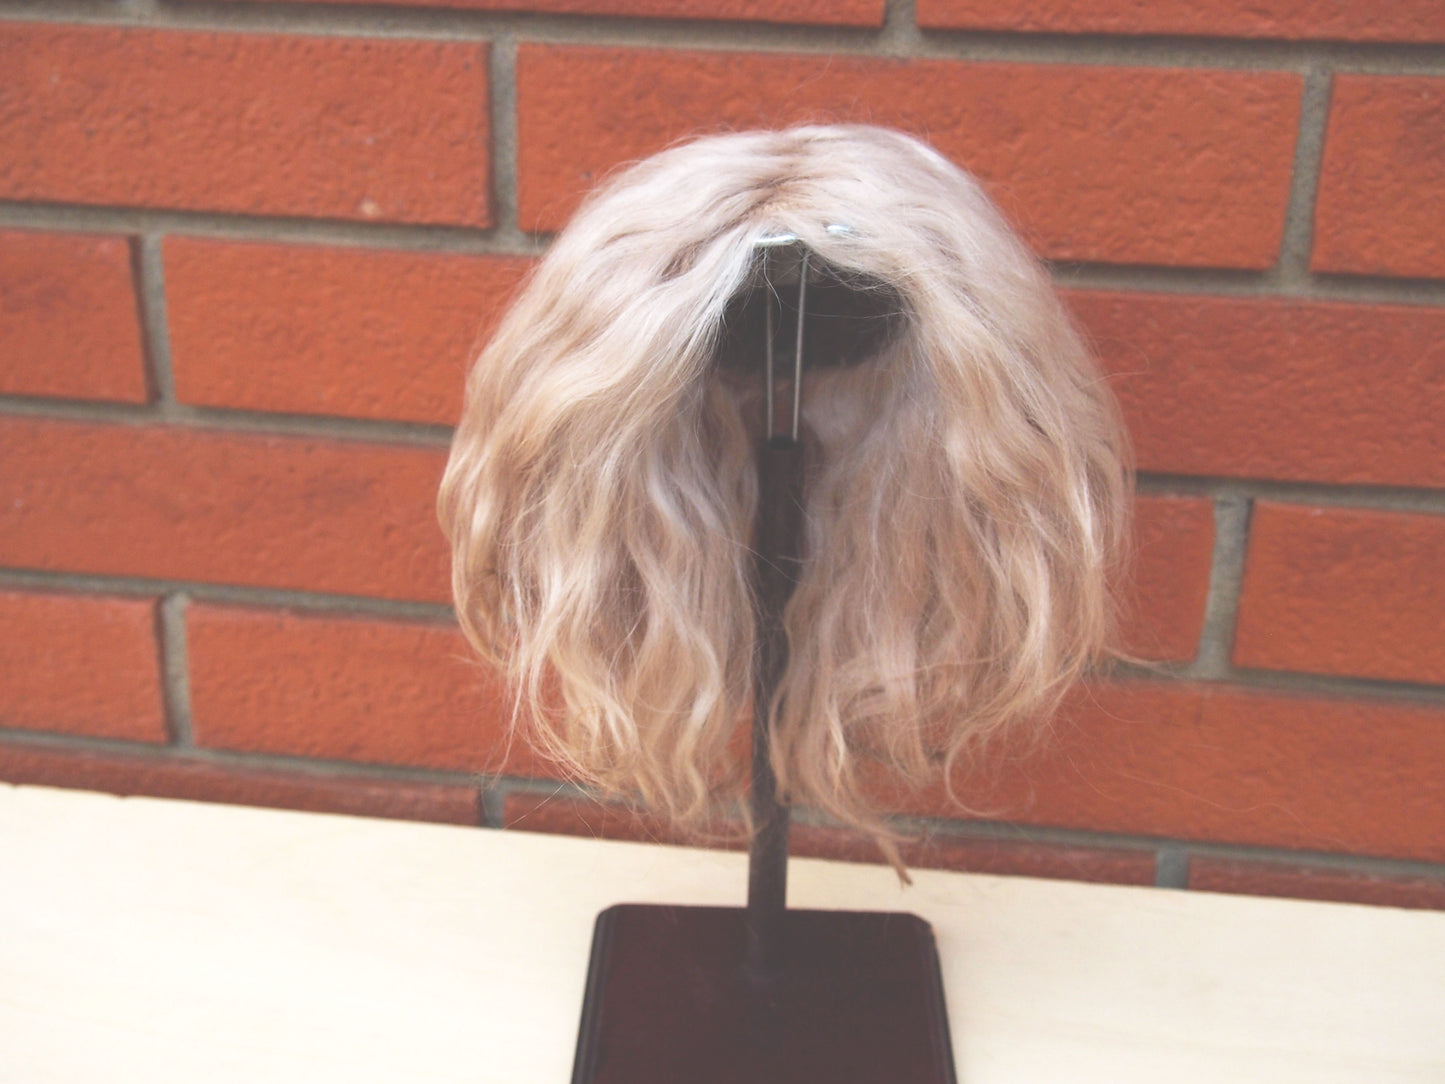 Perruque de poupée Paola Reina en cheveux blonds Angora Mohair.